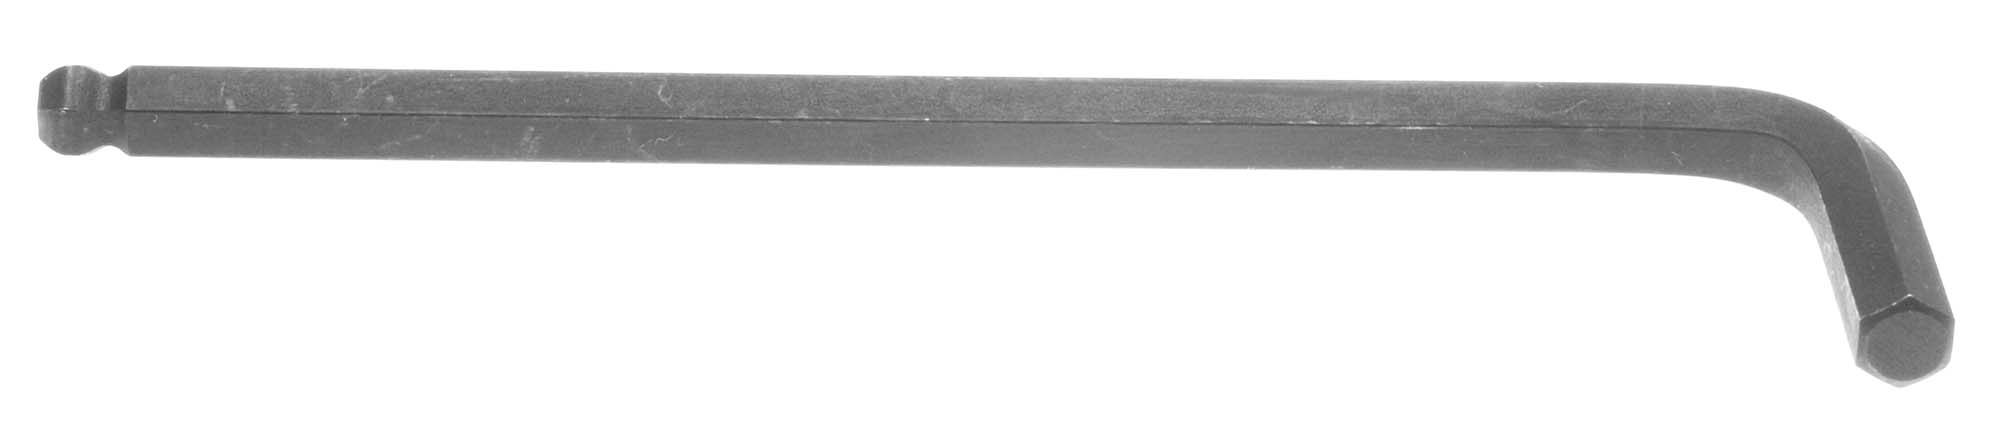 3/32" Bondhus Balldriver L-Wrench Hex Key